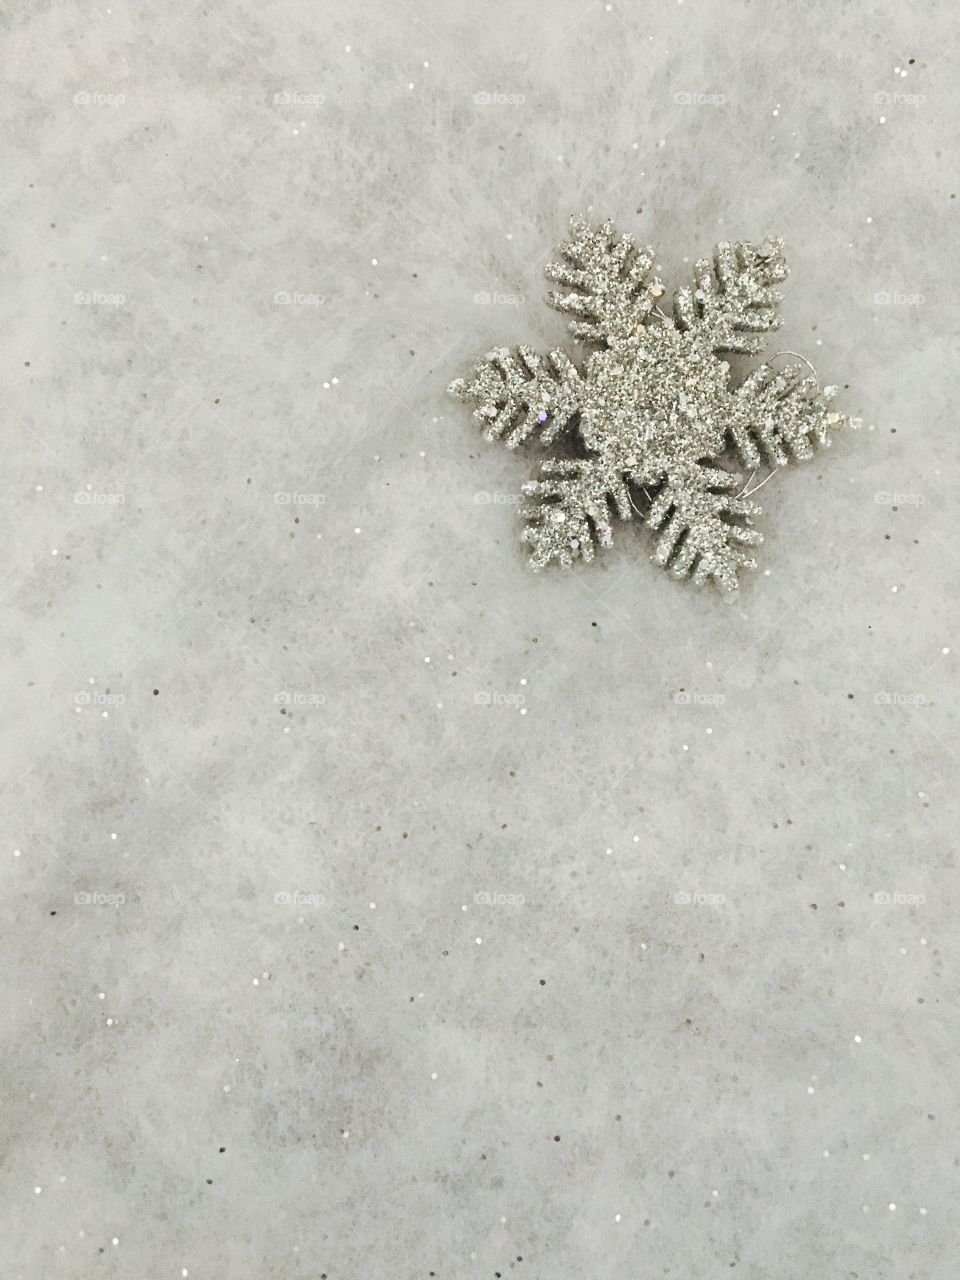 Shiny snowflake jewlery on grey background